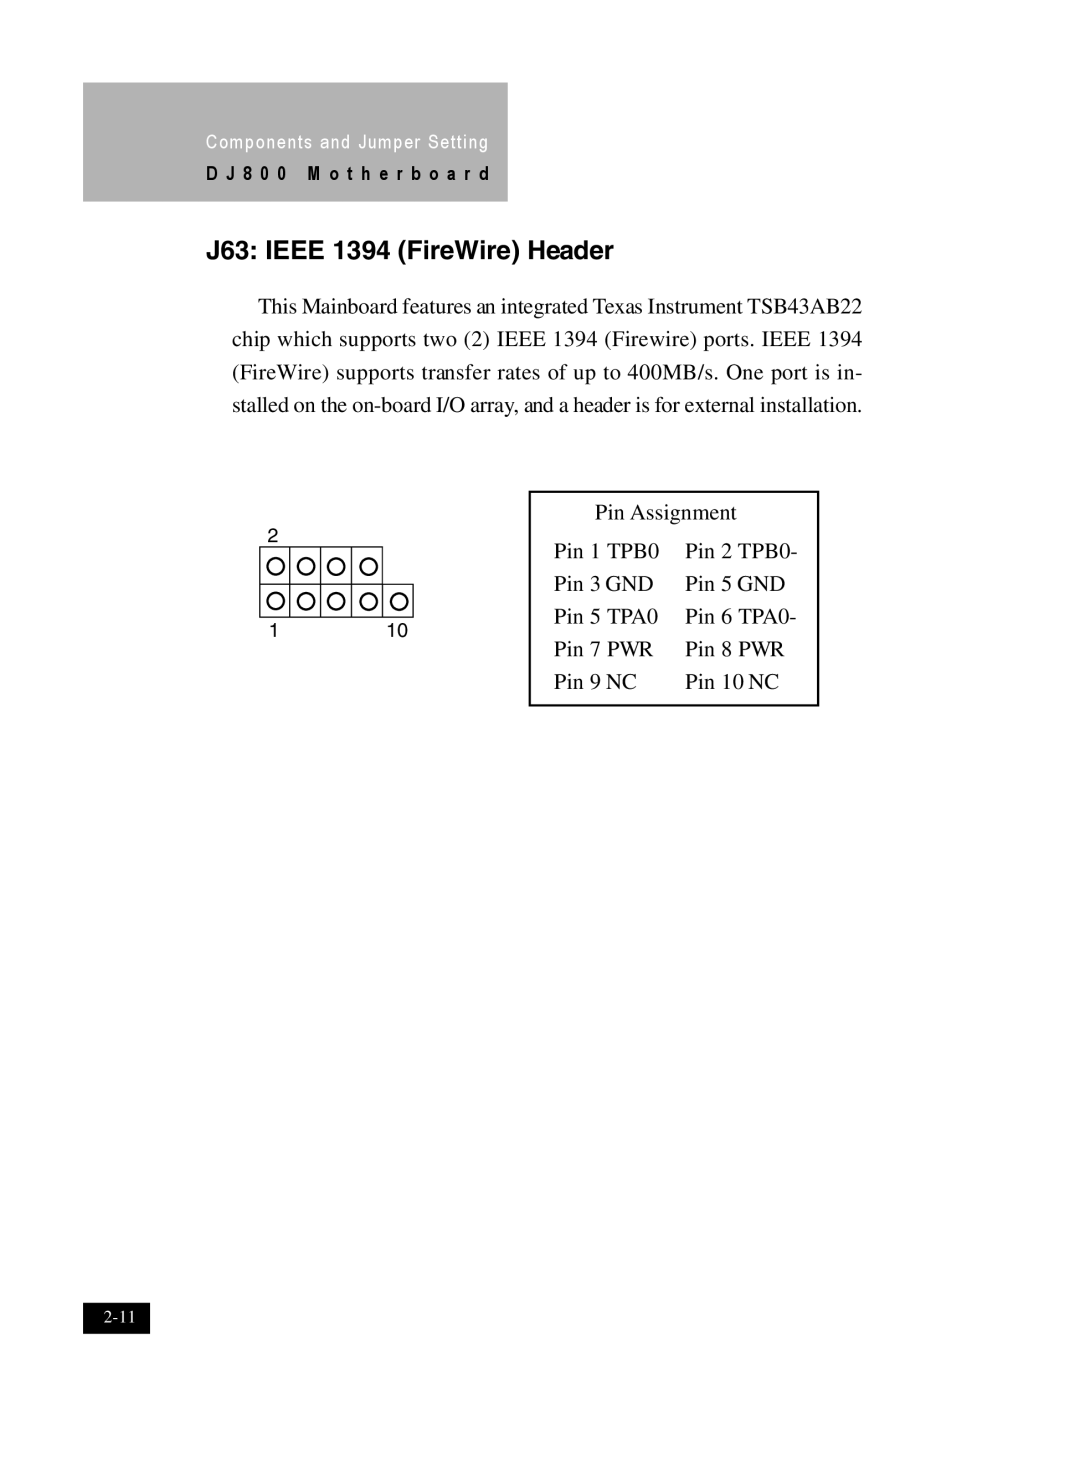 IBM DJ800 user manual J63 IEEE 1394 FireWire Header 